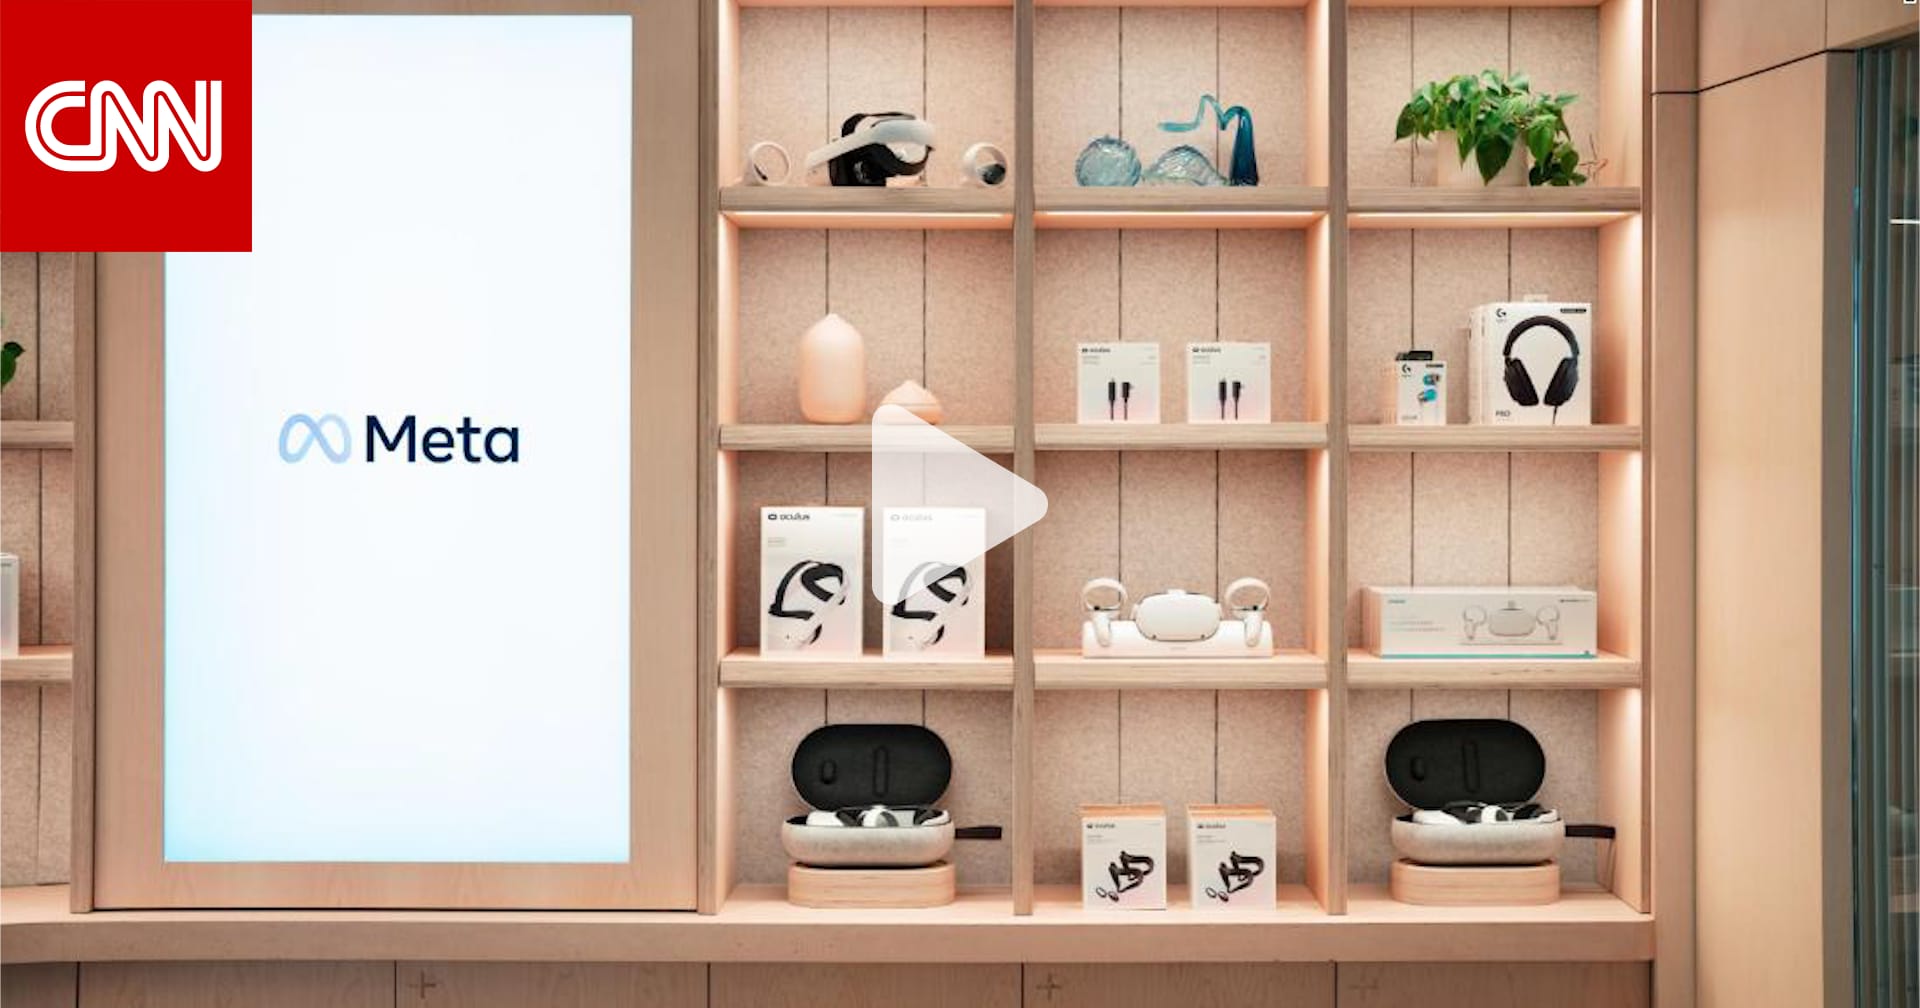 "ميتا" تفتتح أول متاجرها لبيع منتجات الواقع الافتراضي